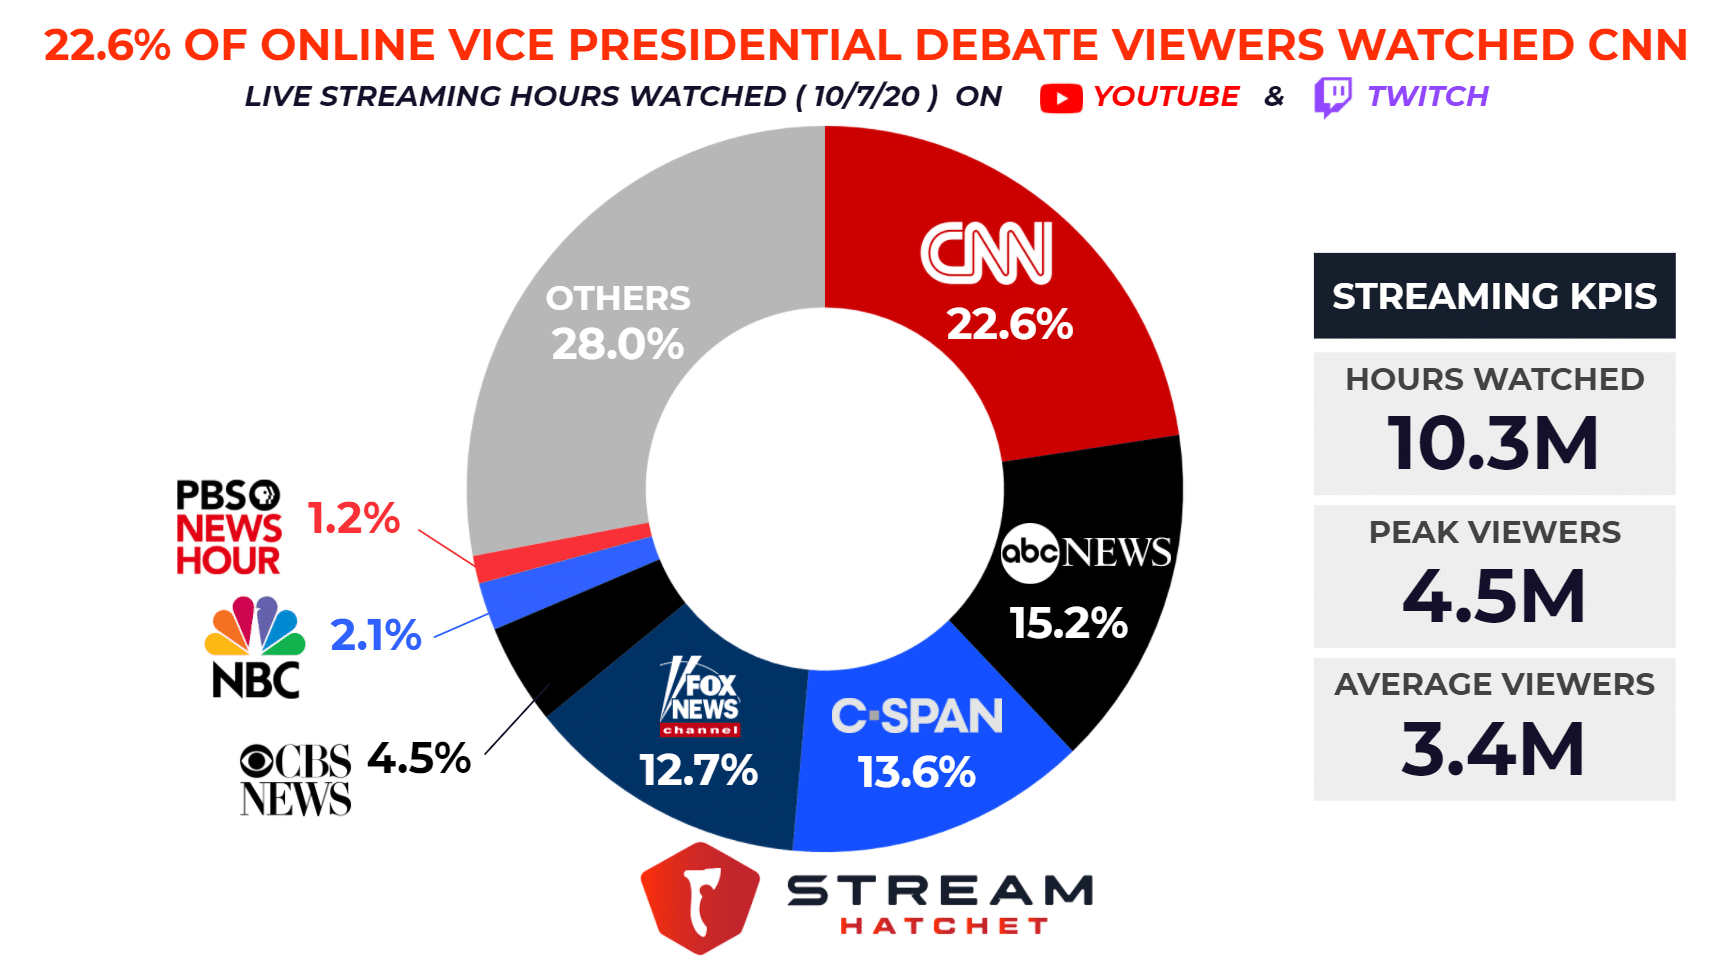 CNN led media in Vice Presidential Debate streaming viewership